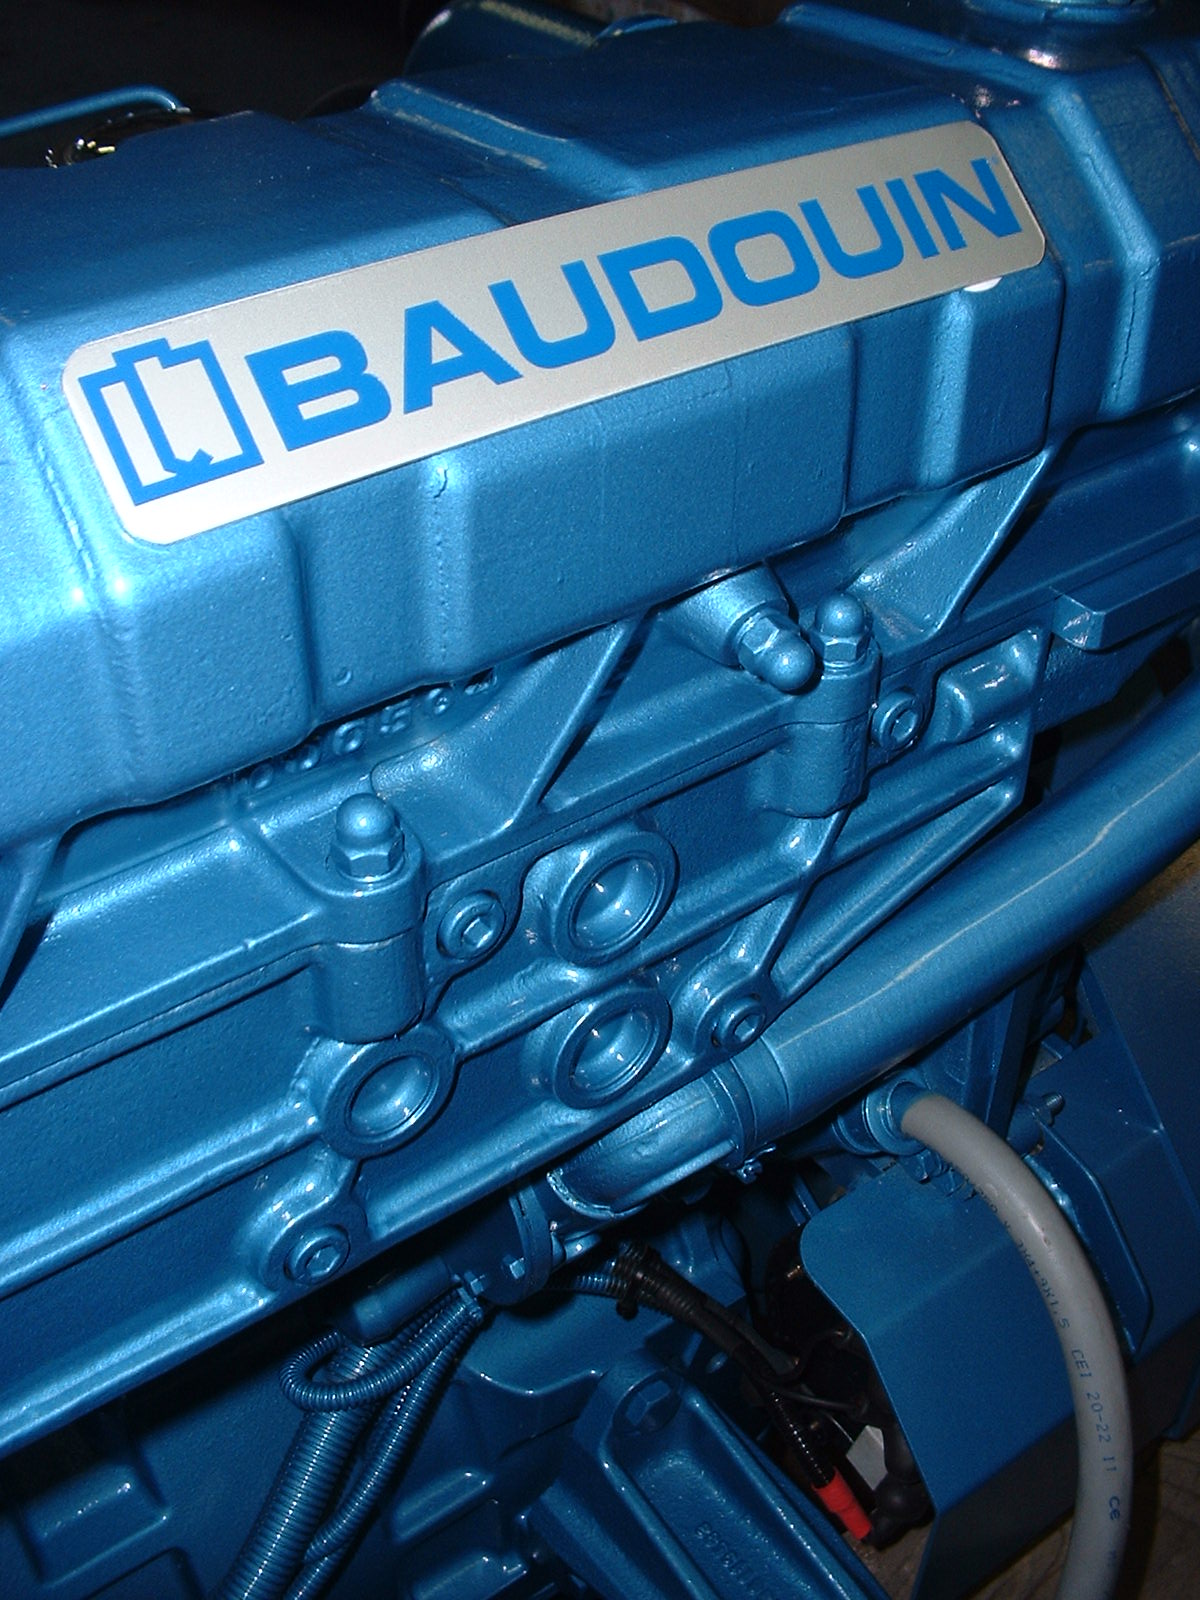 2008 Le nouveau moteur Baudouin